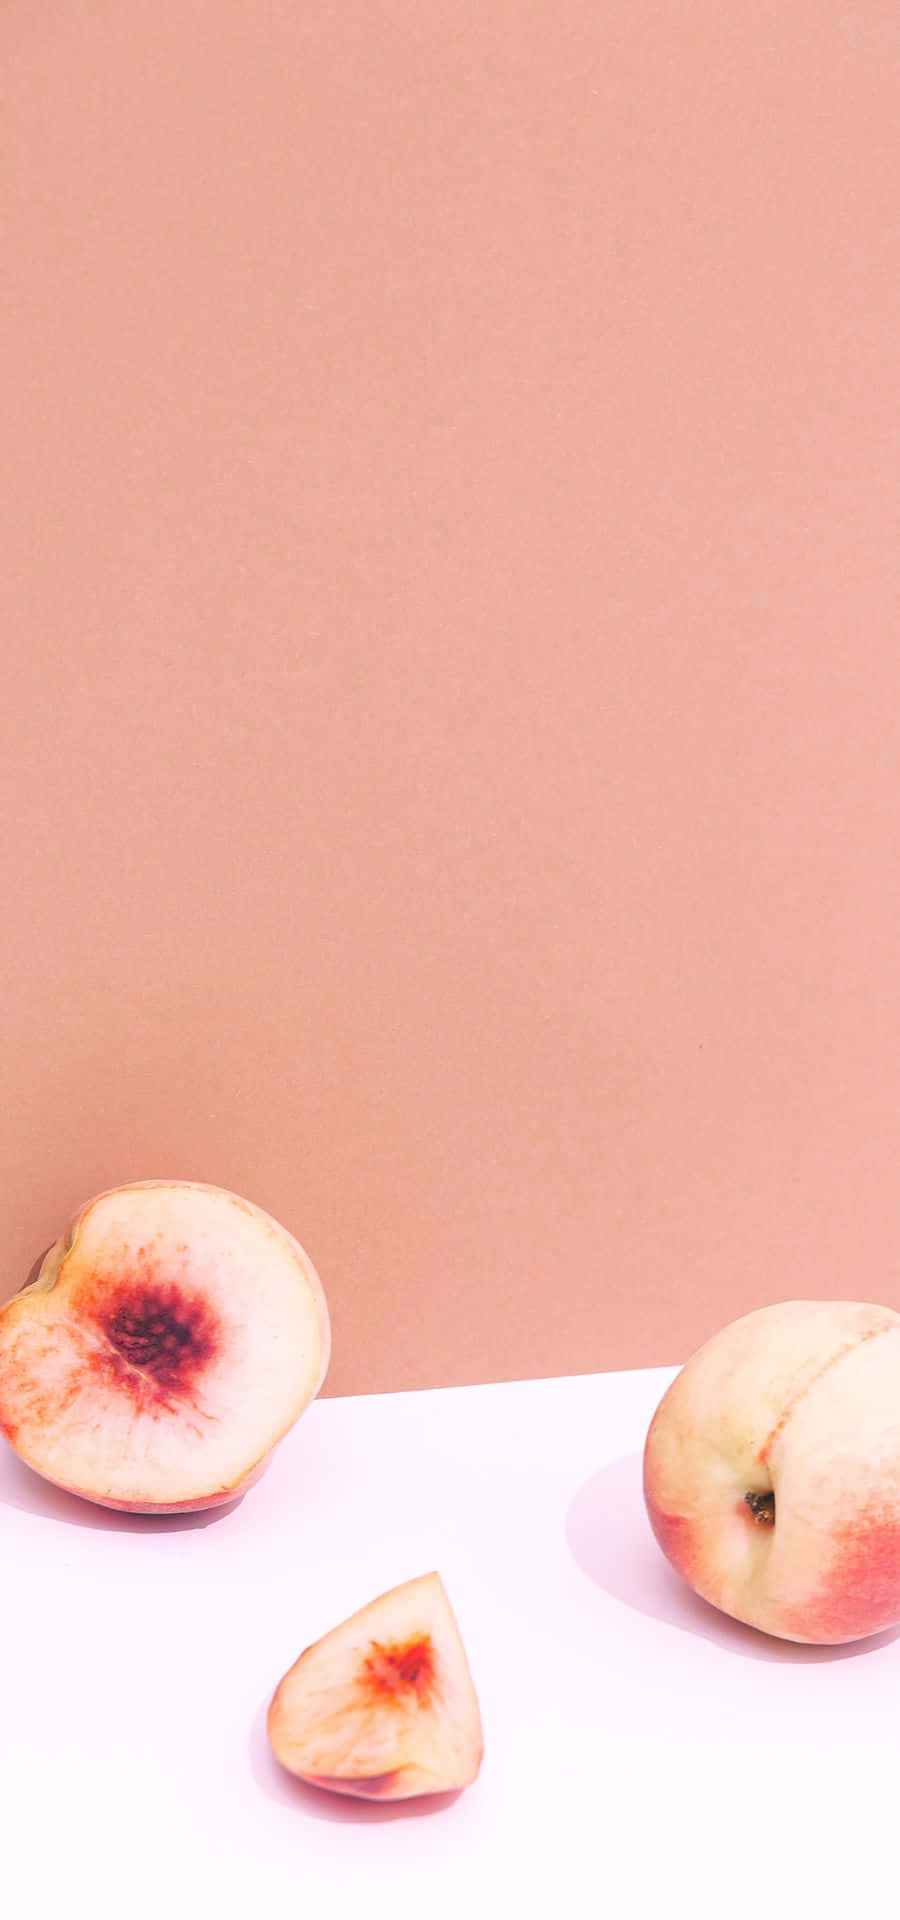 Einweiches Pfirsichfarbenes Hintergrundbild - Zart Und Elegant